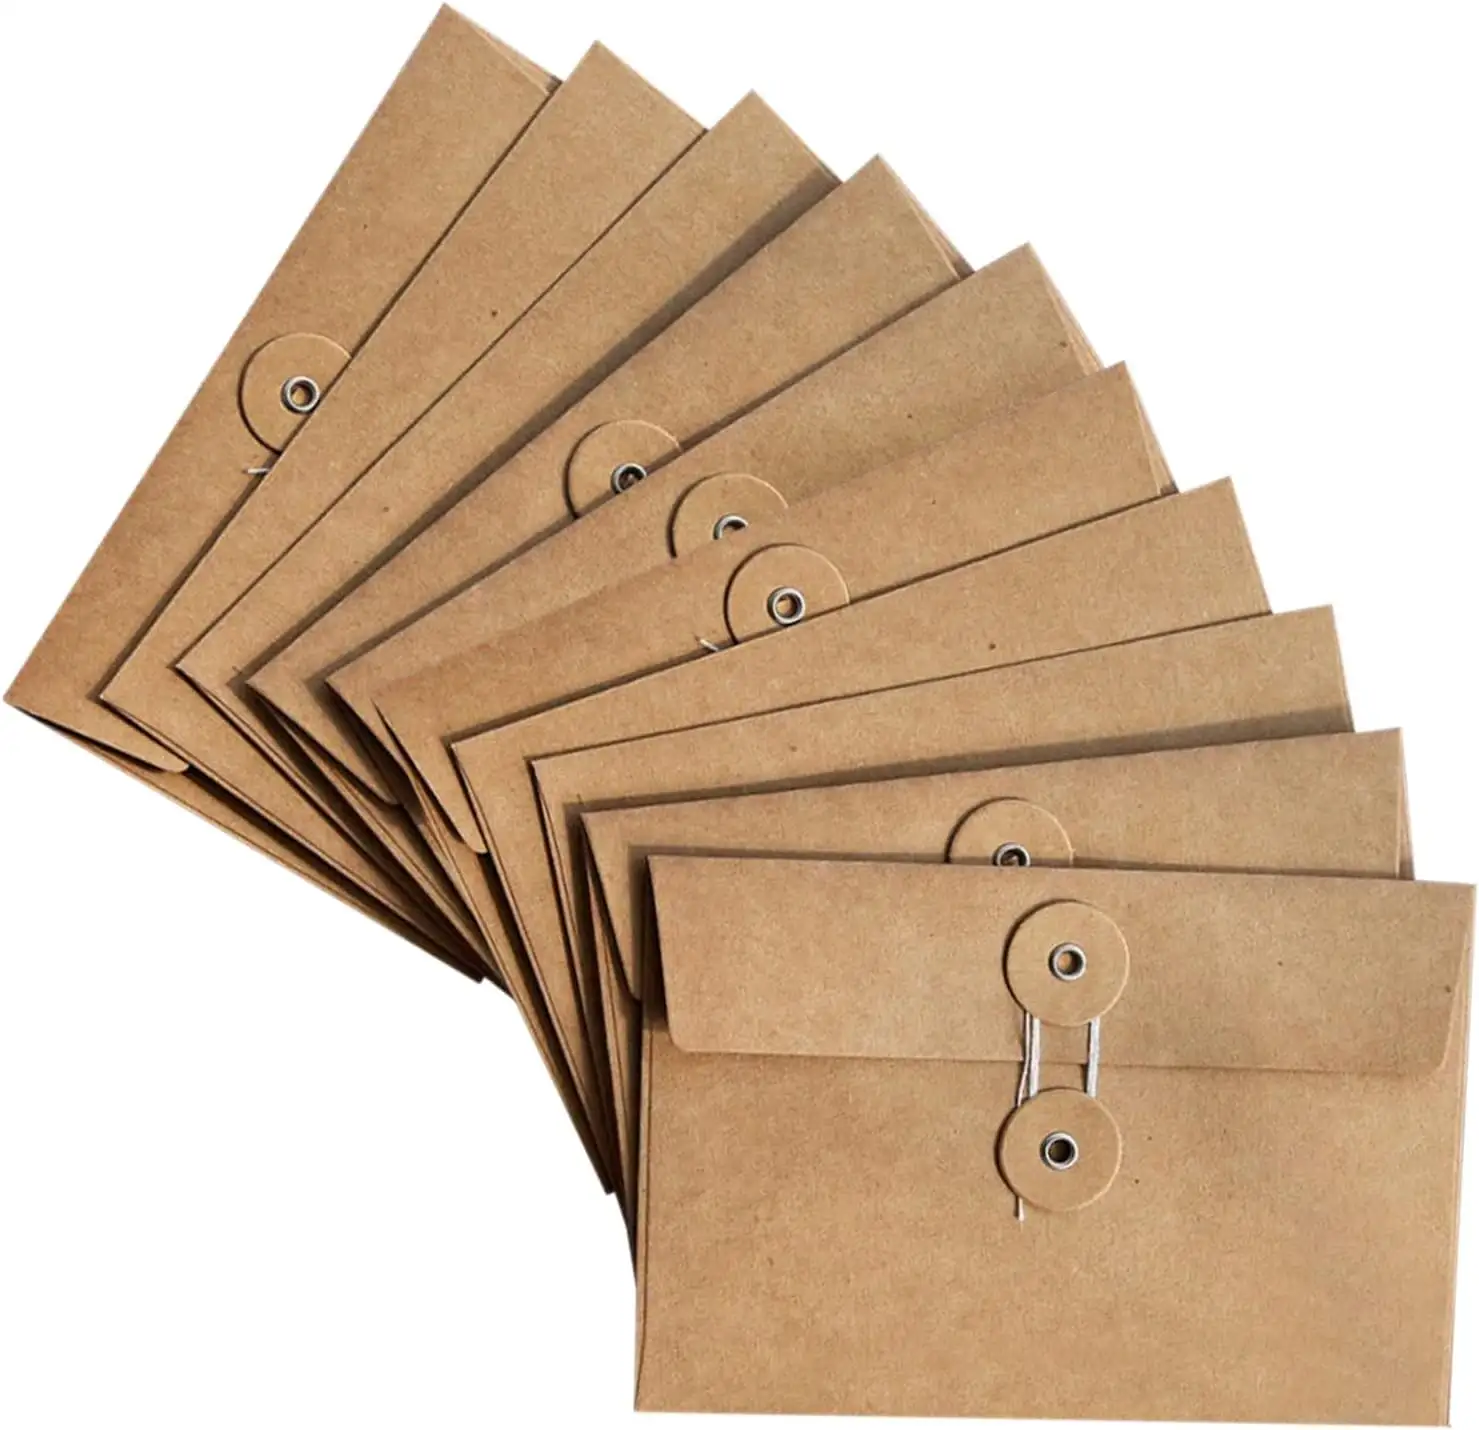 크래프트 종이 봉투 레트로 봉투 포켓 버튼과 로프 클로저, 우편 엽서 청구서 초대장에 적합, 갈색